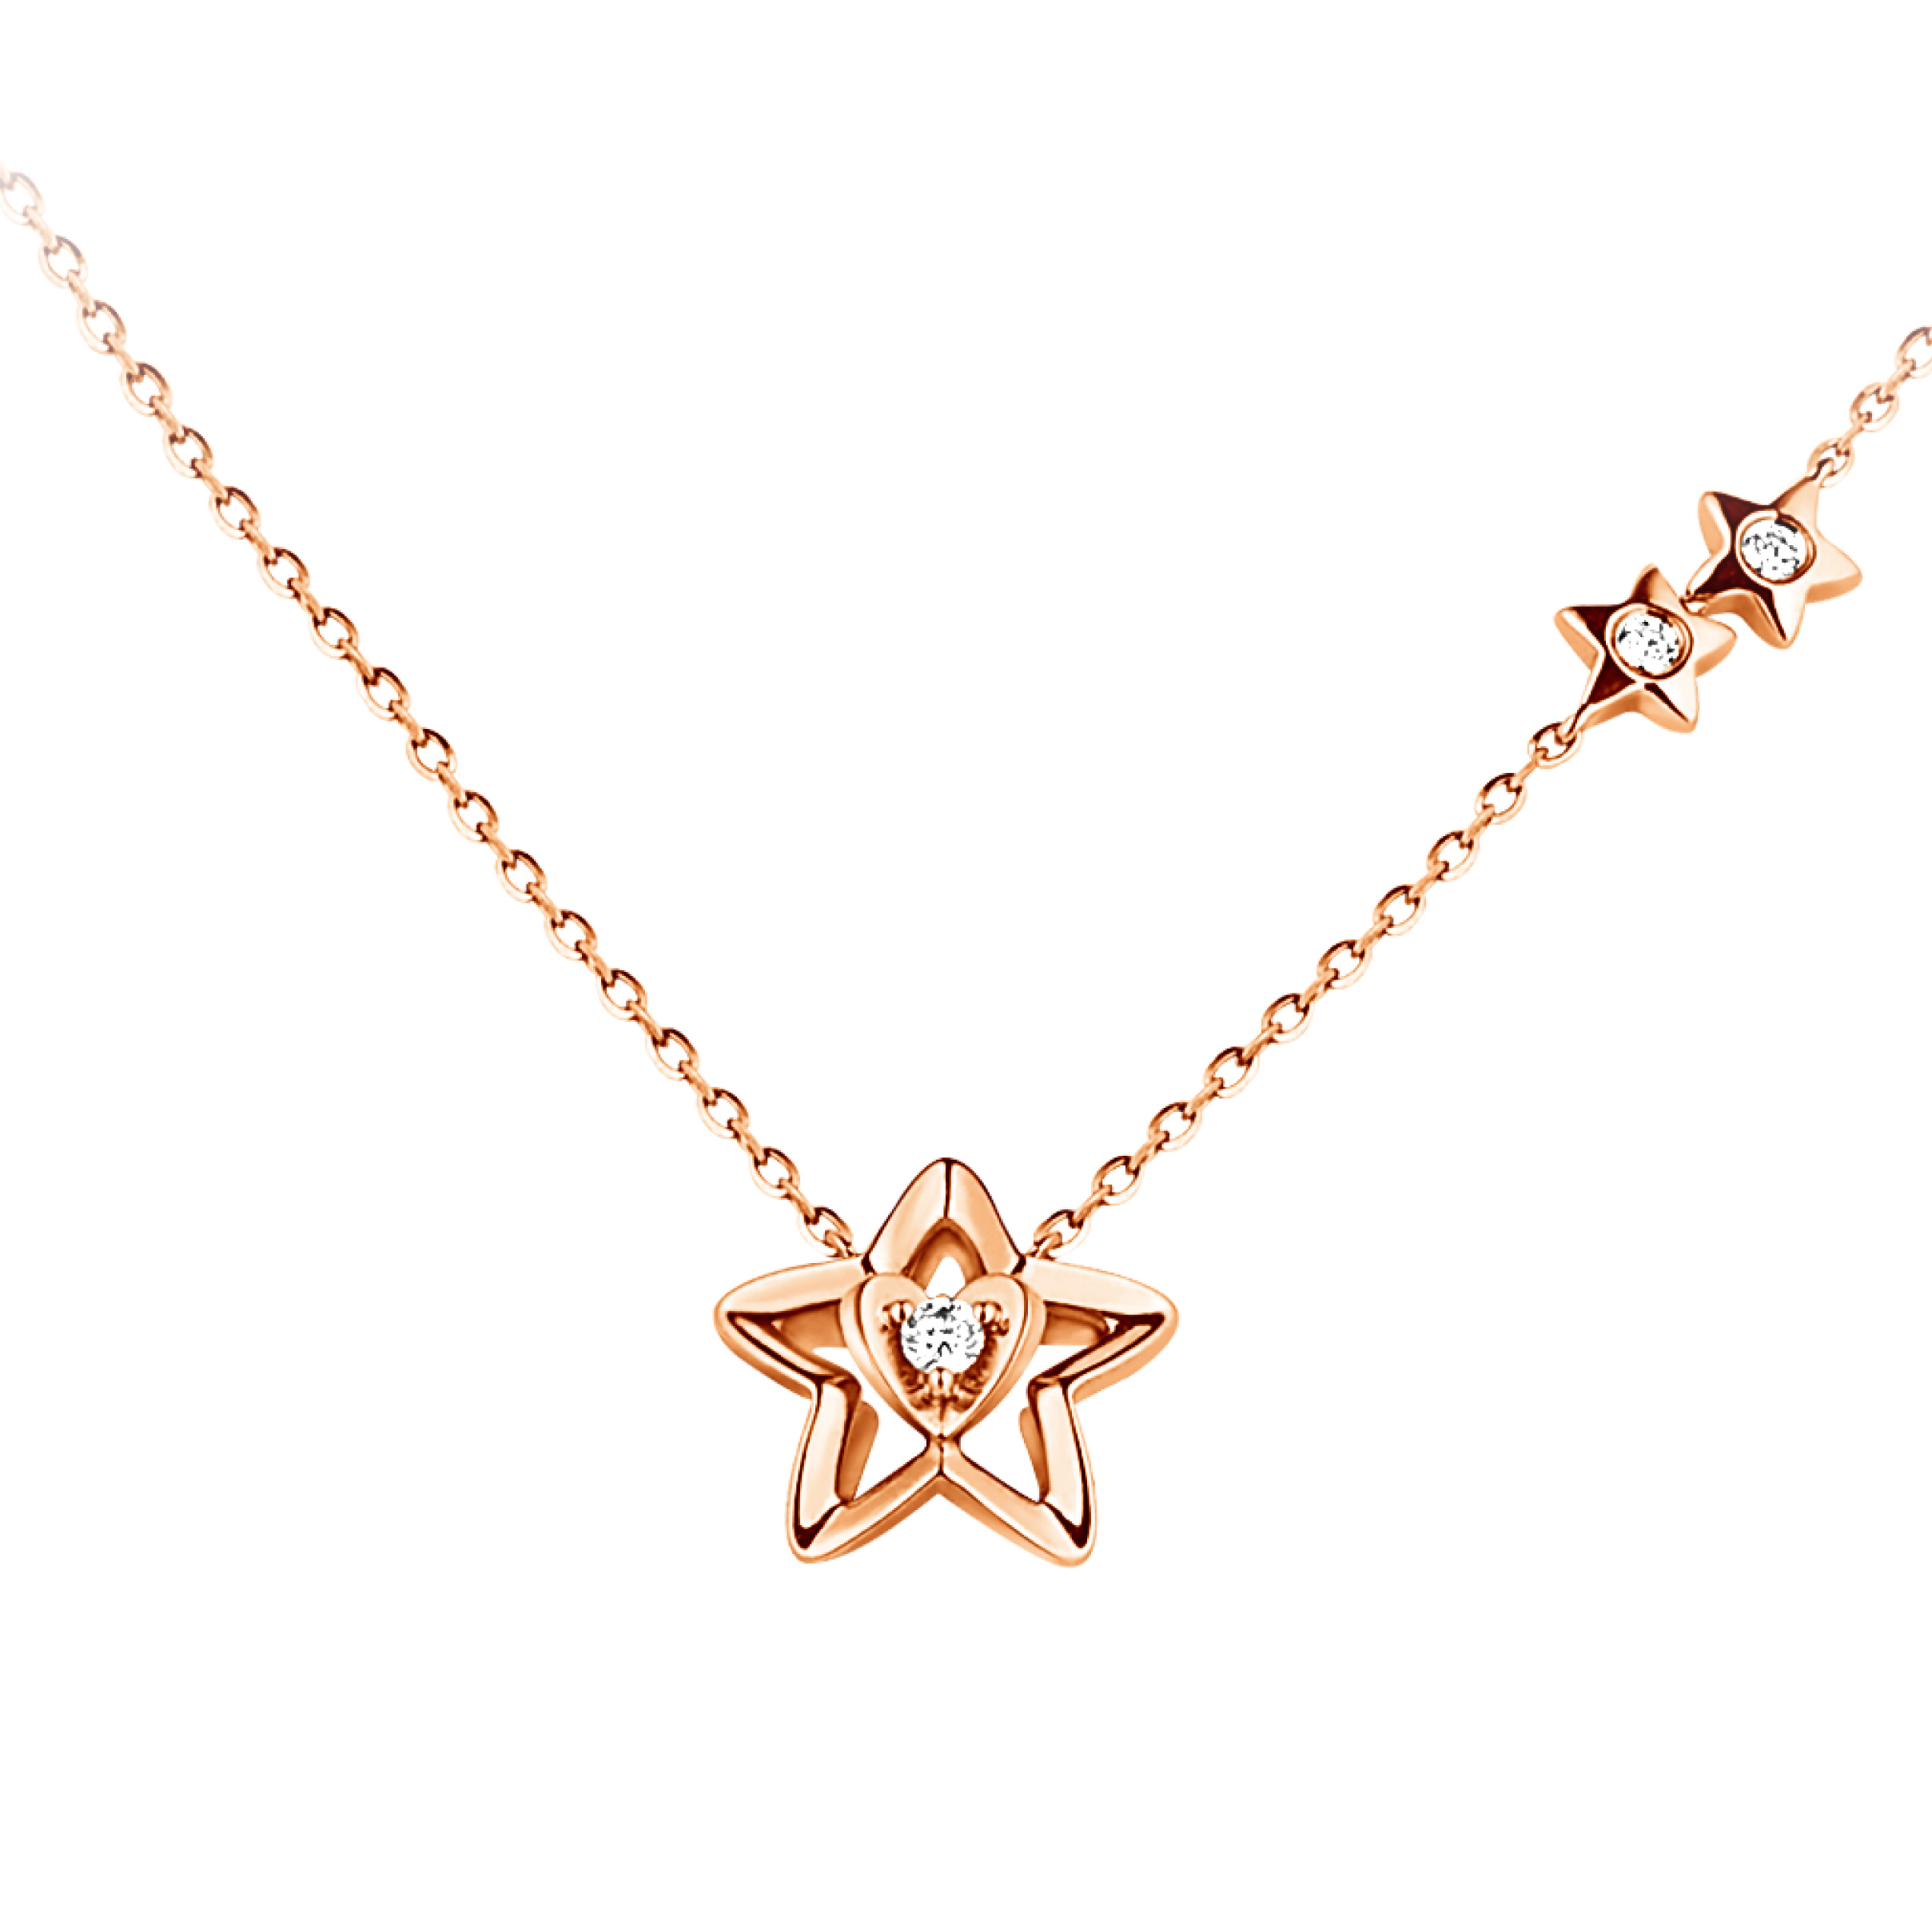 Dear Q“Little Star” Necklace